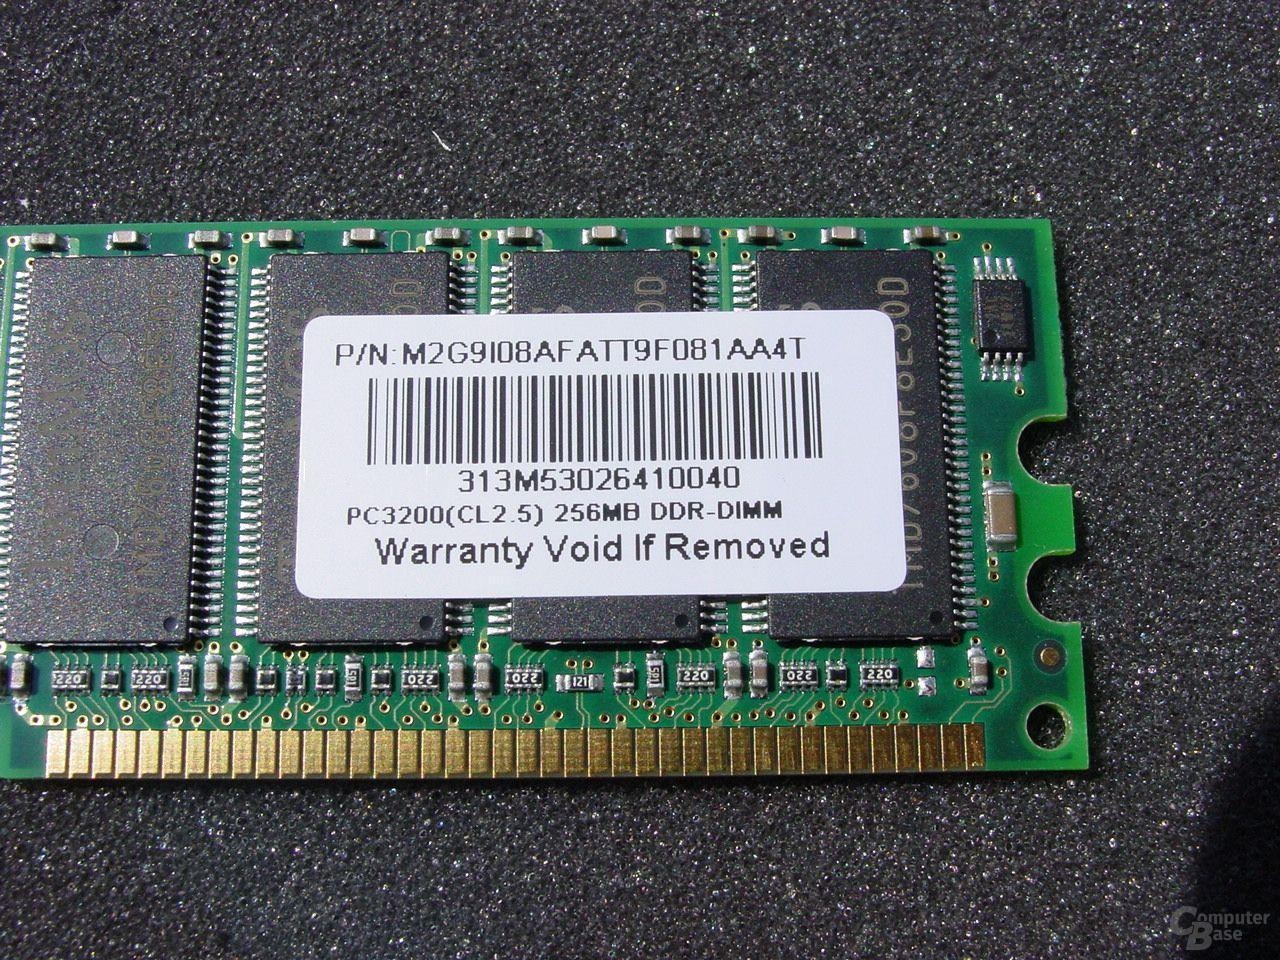 Twinmos DDR400